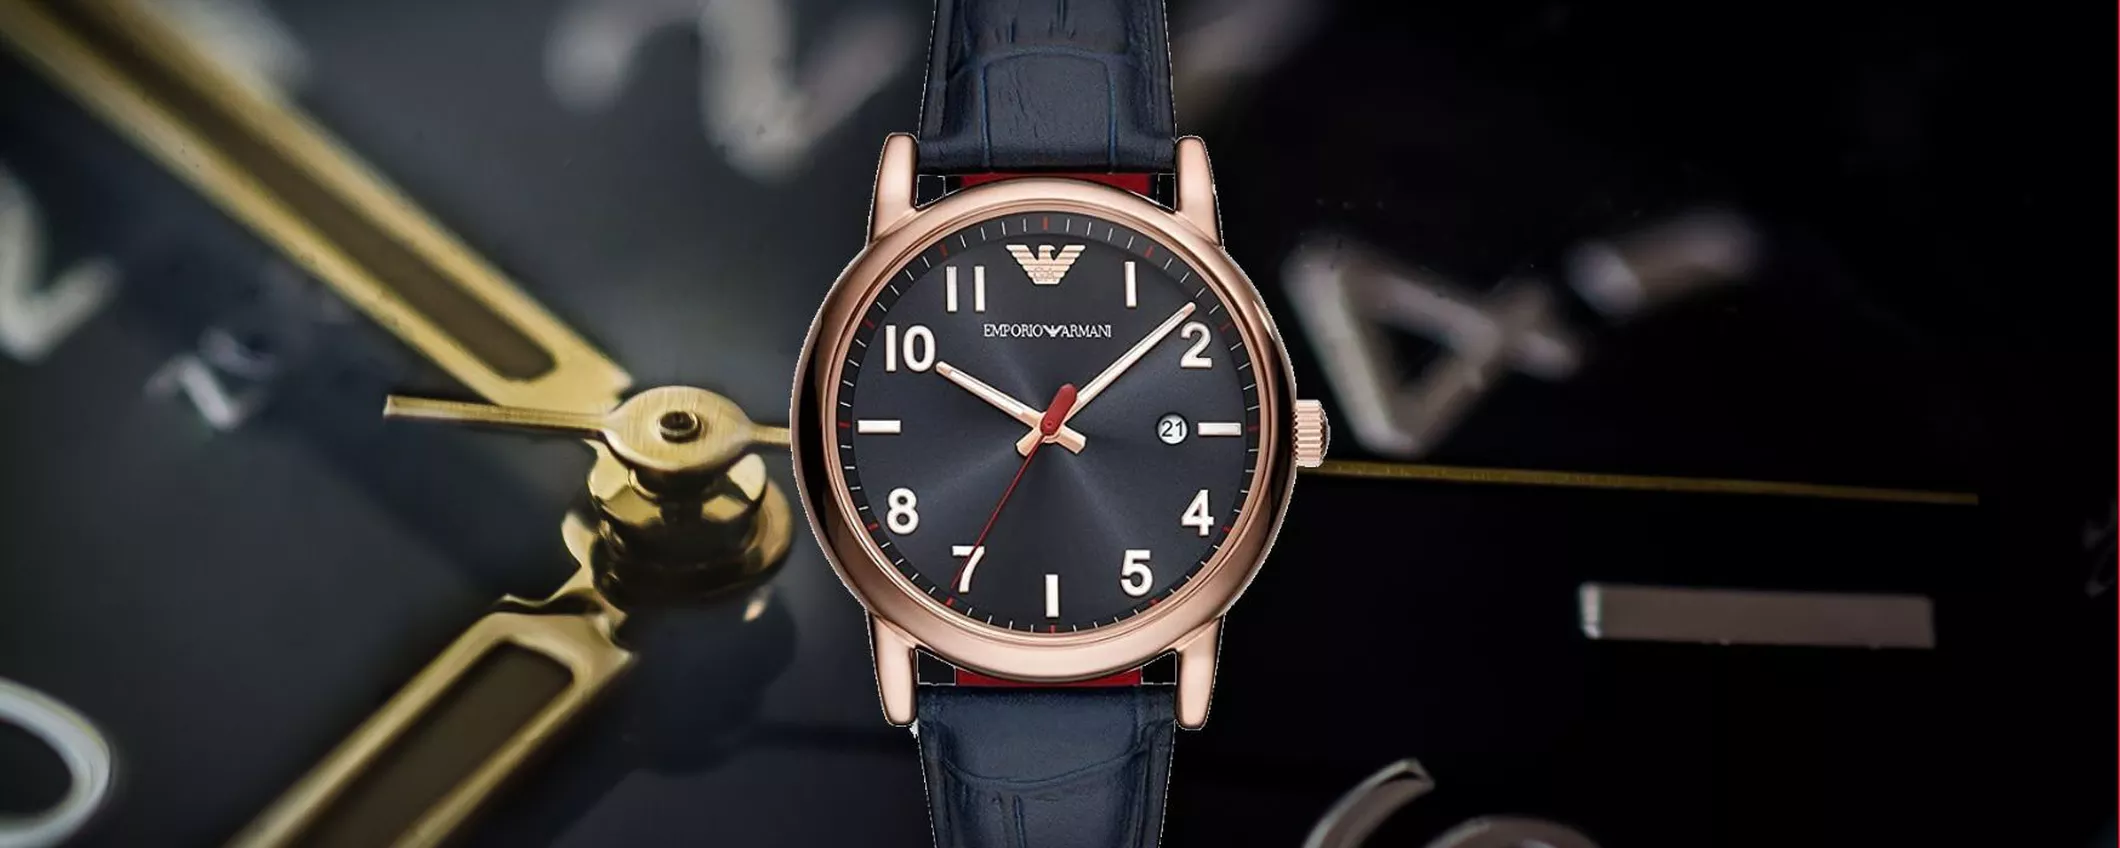 Lo sconto su Amazon di questo elegante orologio Emporio Armani è CLAMOROSO